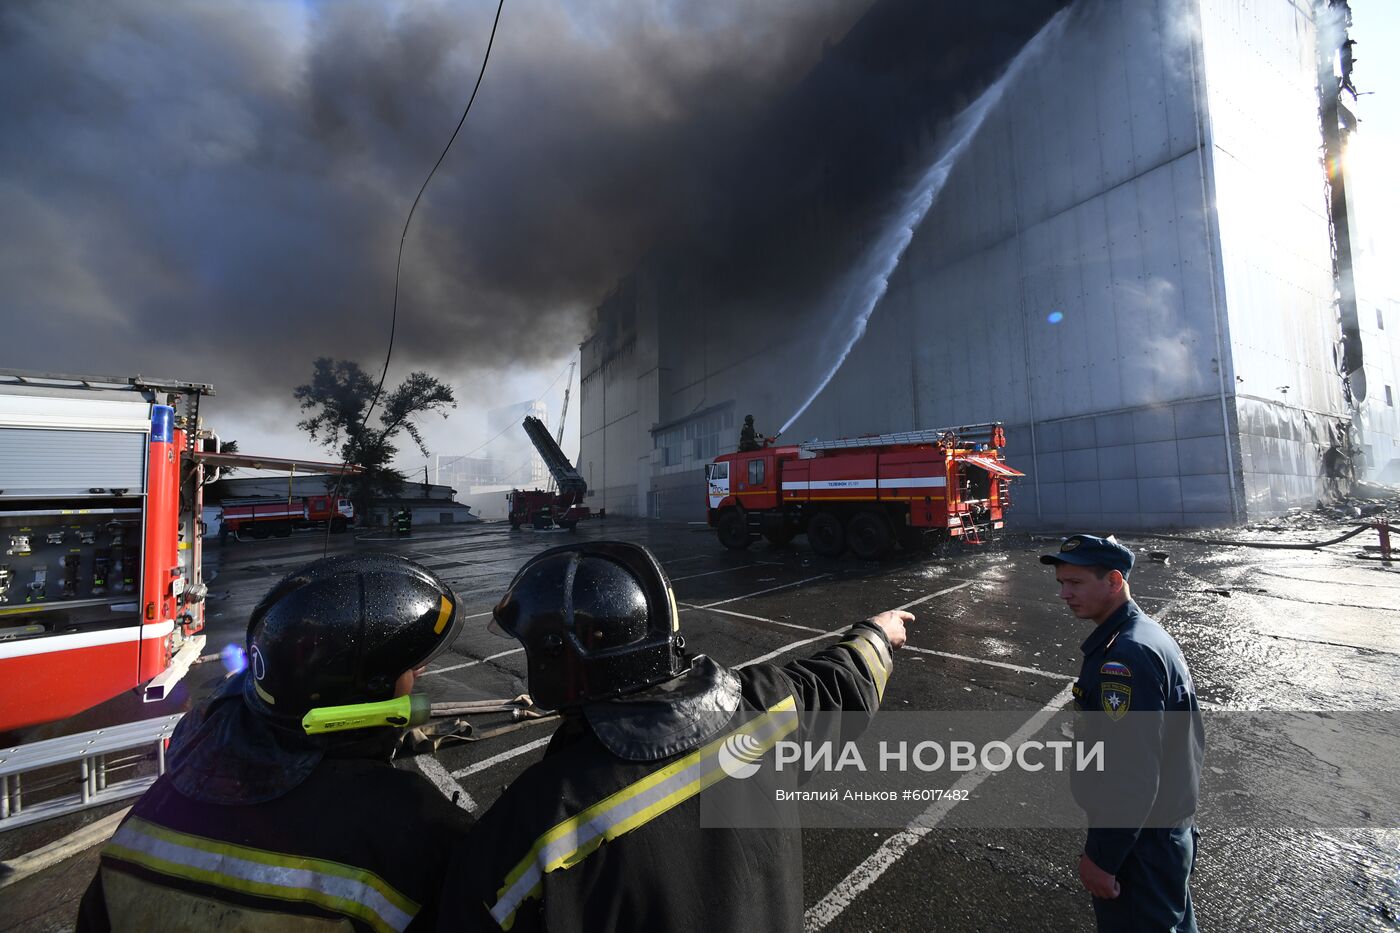 Пожар в ТЦ "Максим" во Владивостоке